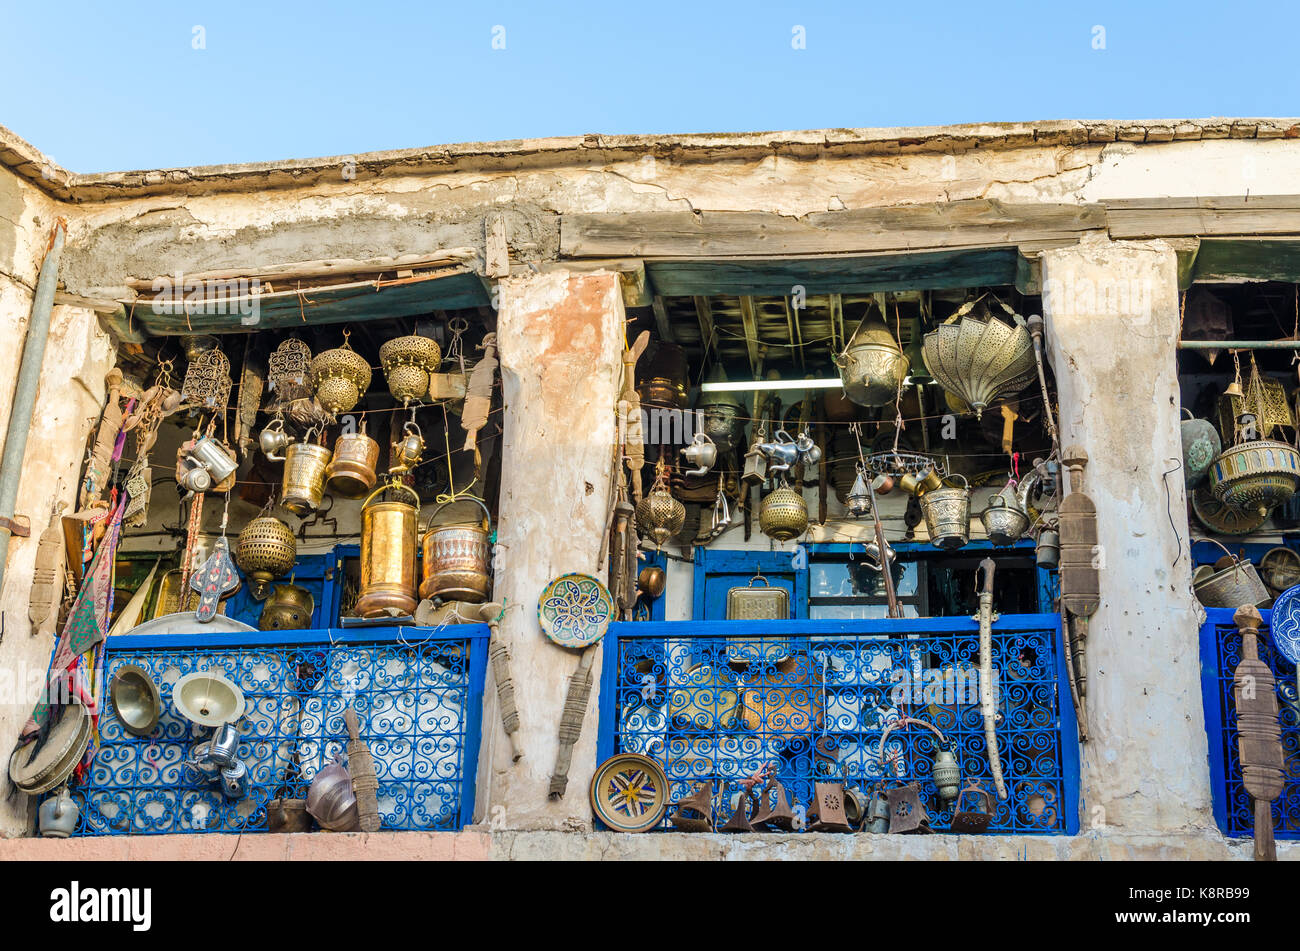 Grande sélection de pots, lampes de poche, lanterne et autres ouvrages métalliques en boutique de souk dans la médina de Fès, Maroc, afrique du nord. Banque D'Images